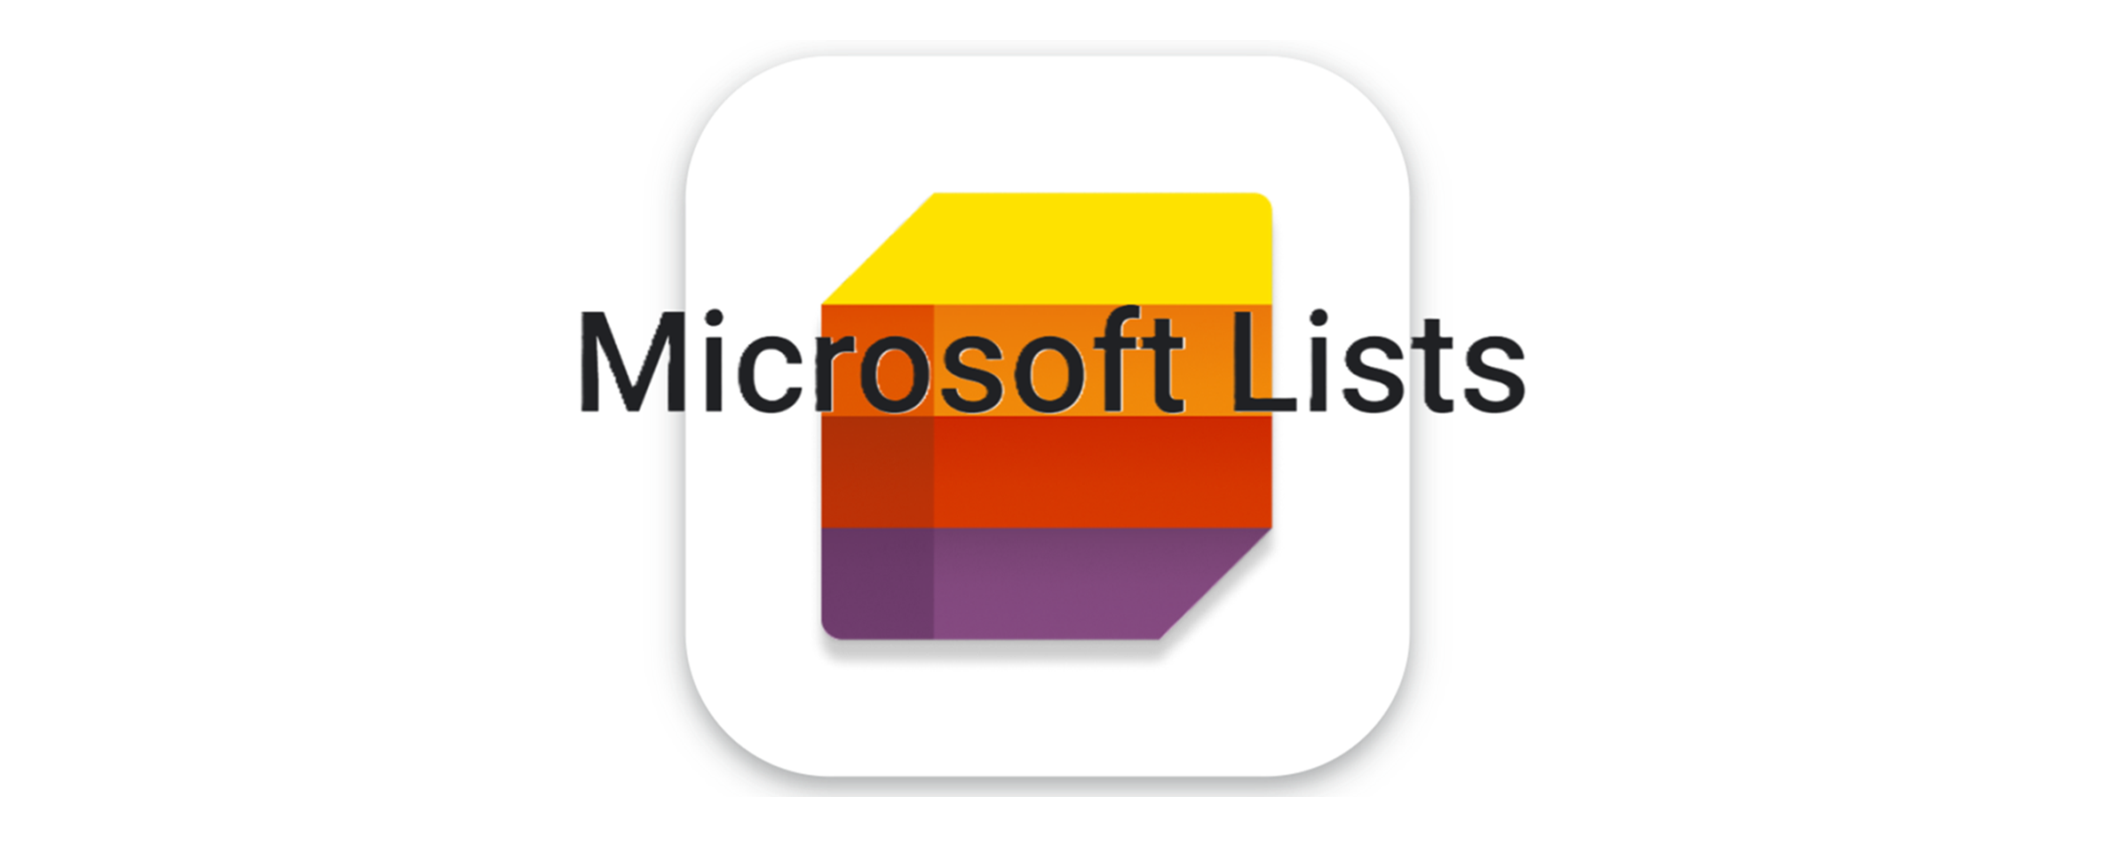 Microsoft Lists: l'applicazione gratuita per creare e gestire elenchi